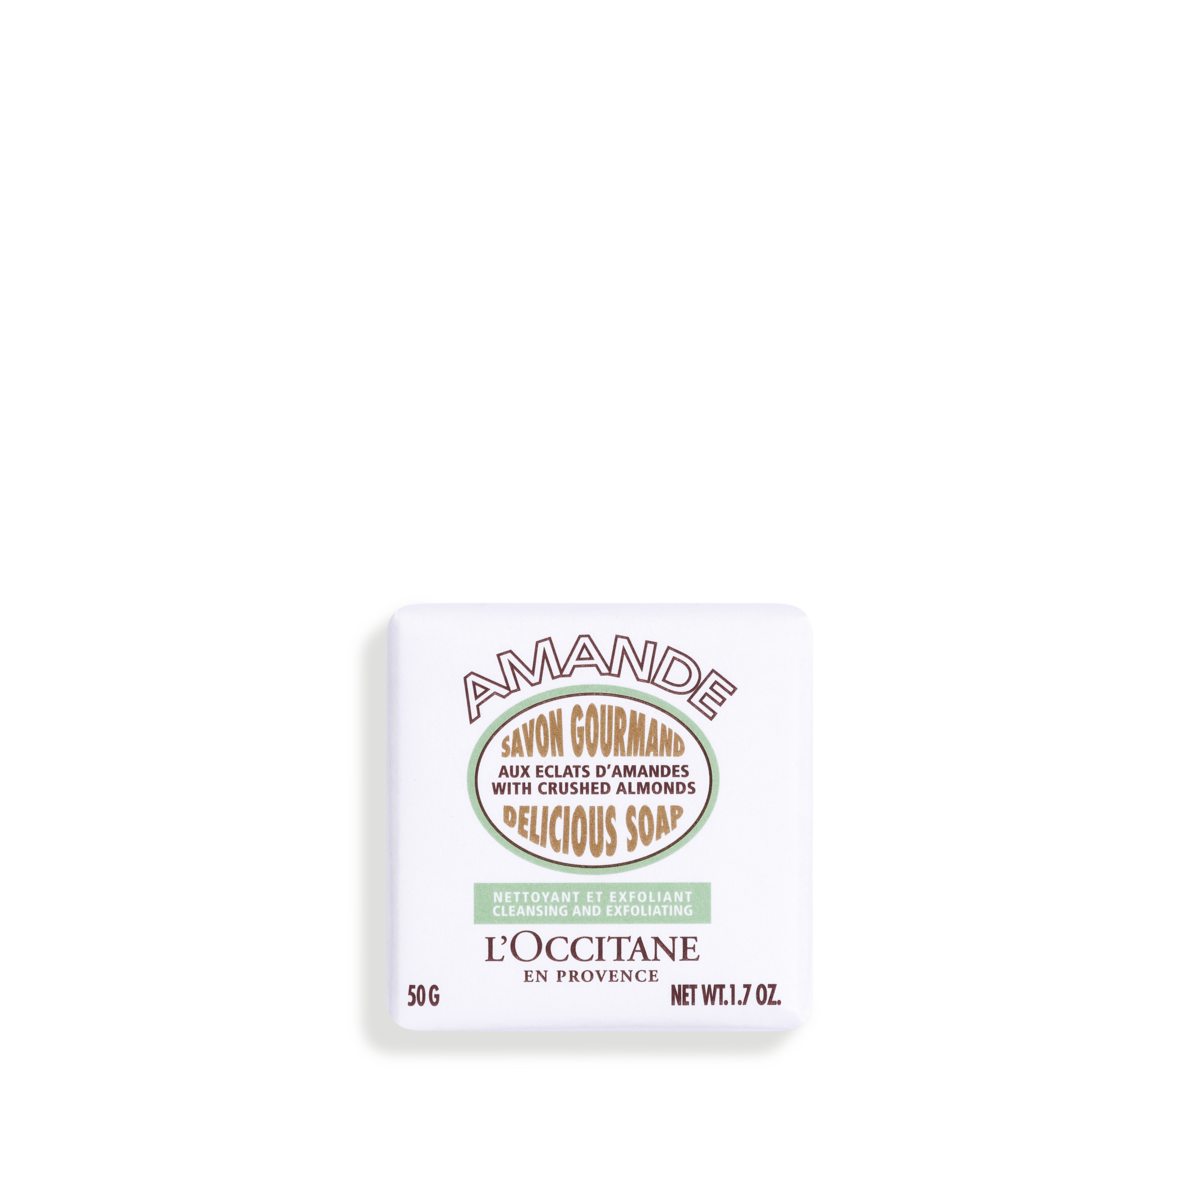 Buy Almond Delicious Soap - 50 g | L'Occitane TH